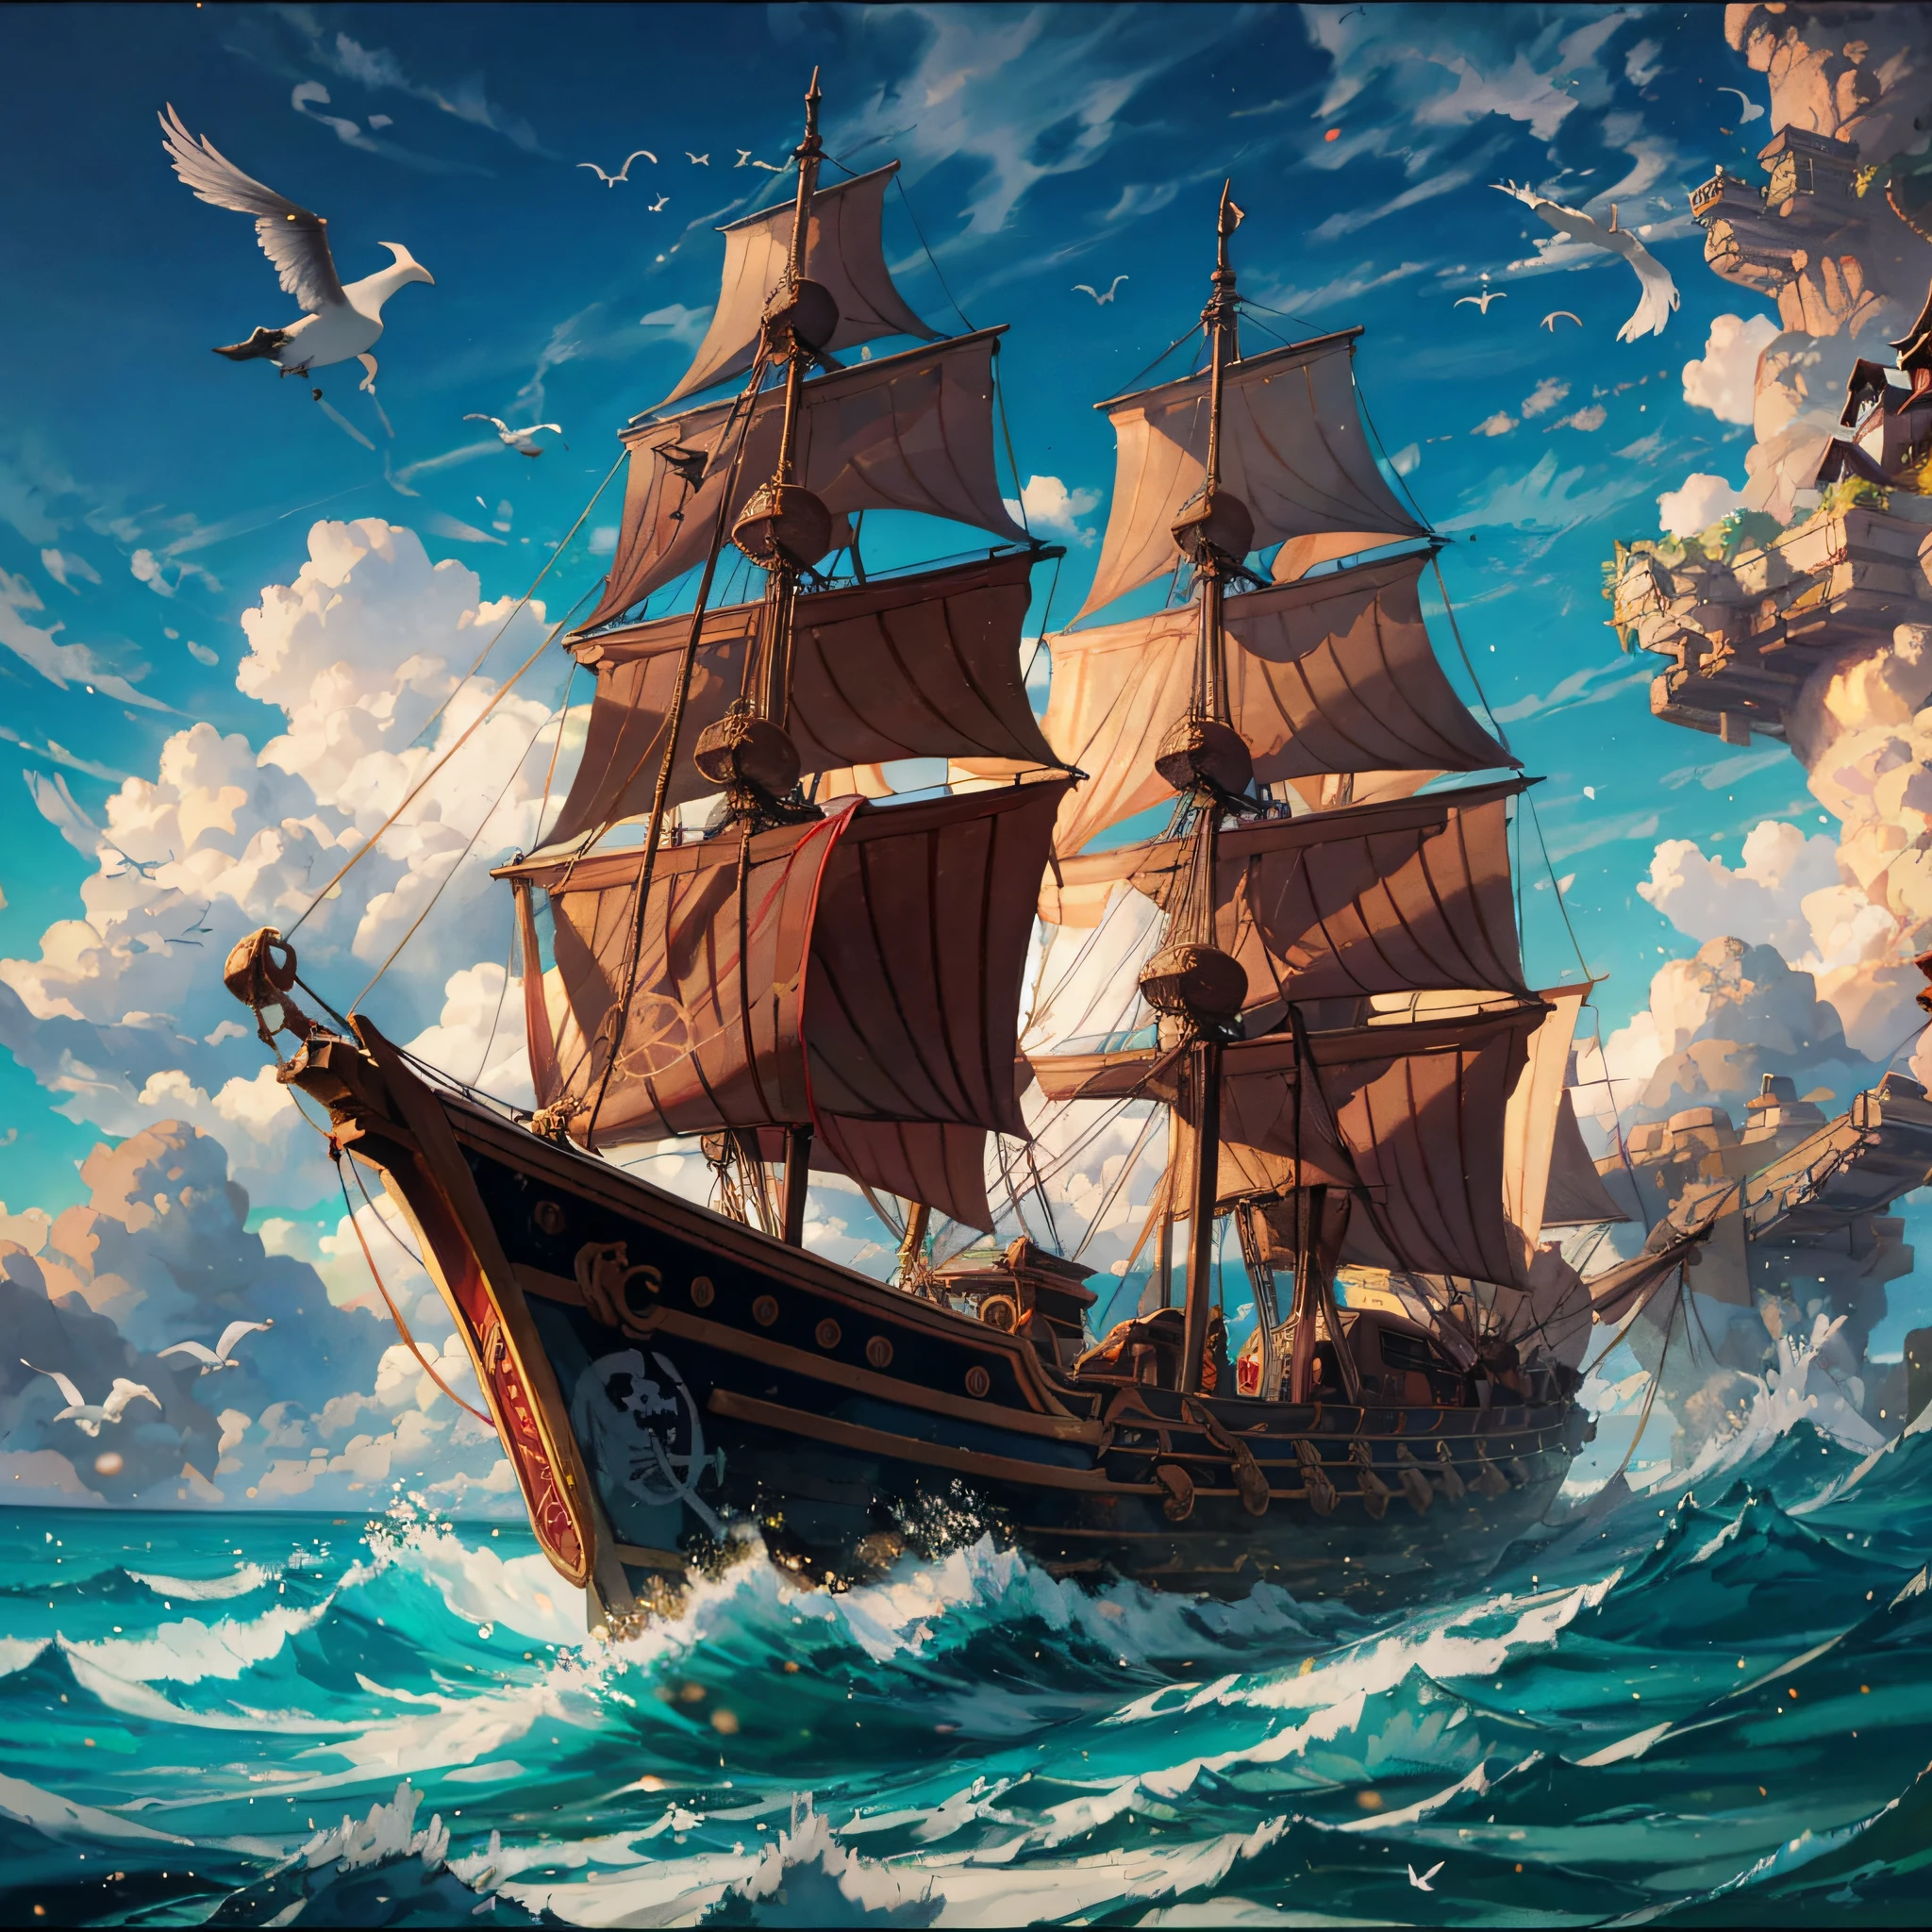 弗雷德里克·埃德溫·丘奇繪畫風格, 海盜船, 战斗, 海鸥, 硝煙, 精美的構圖, 豐富的構圖,